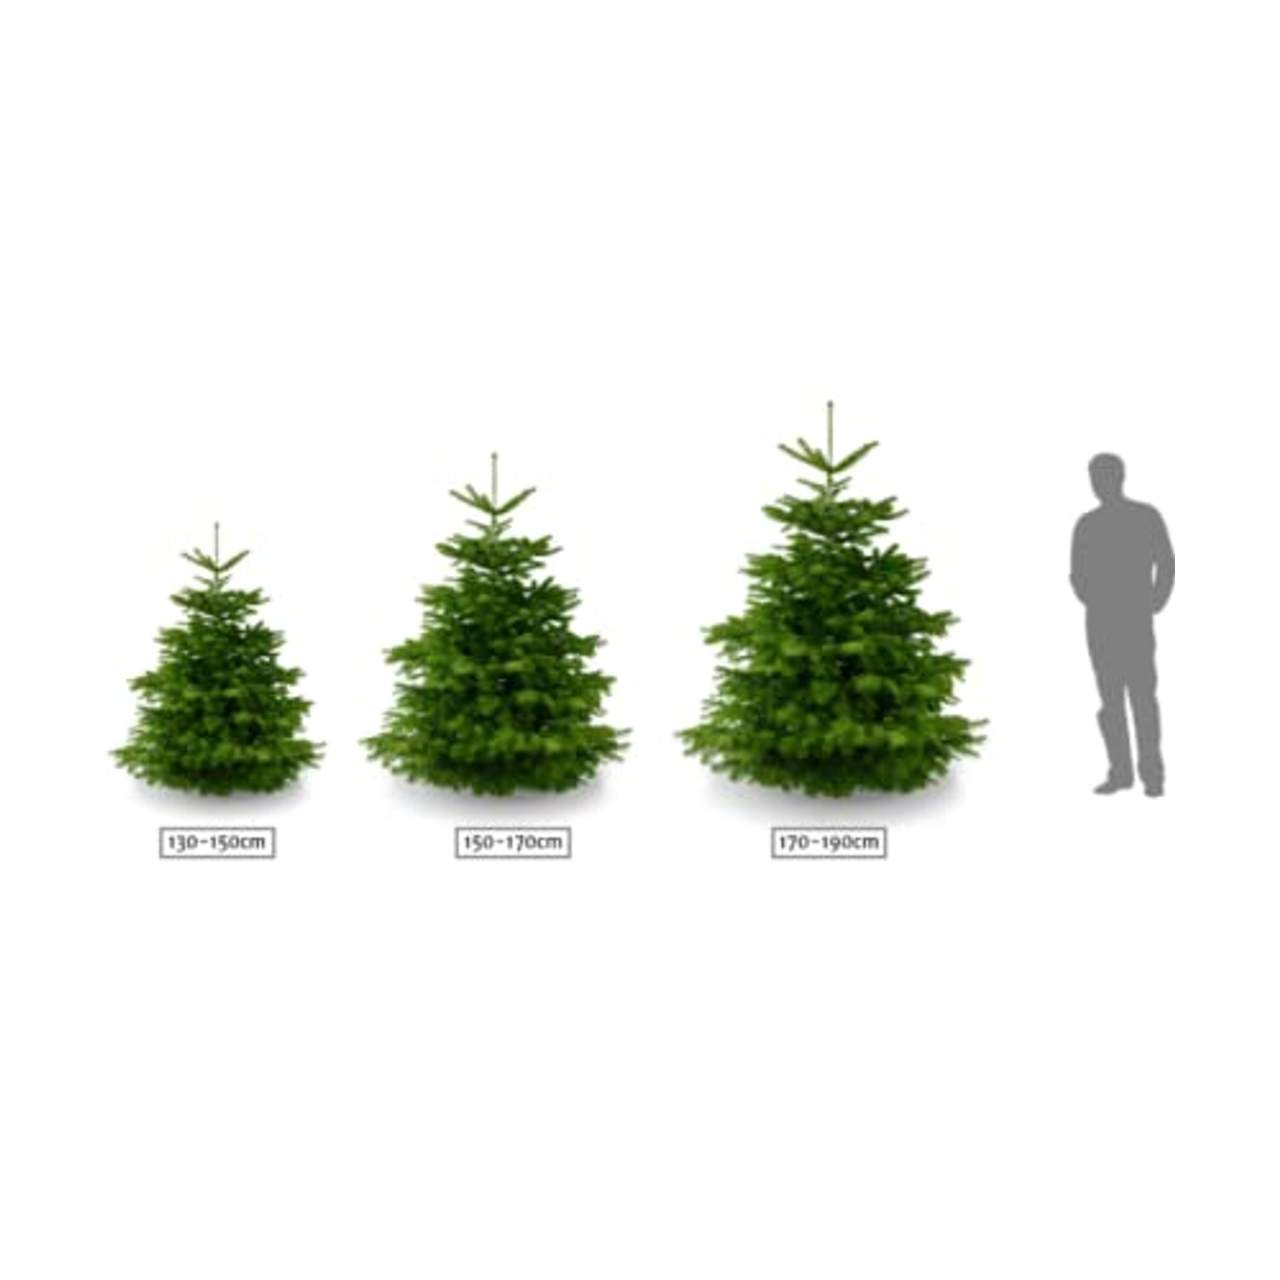 Lichtertanne Echter Weihnachtsbaum 100-130cm